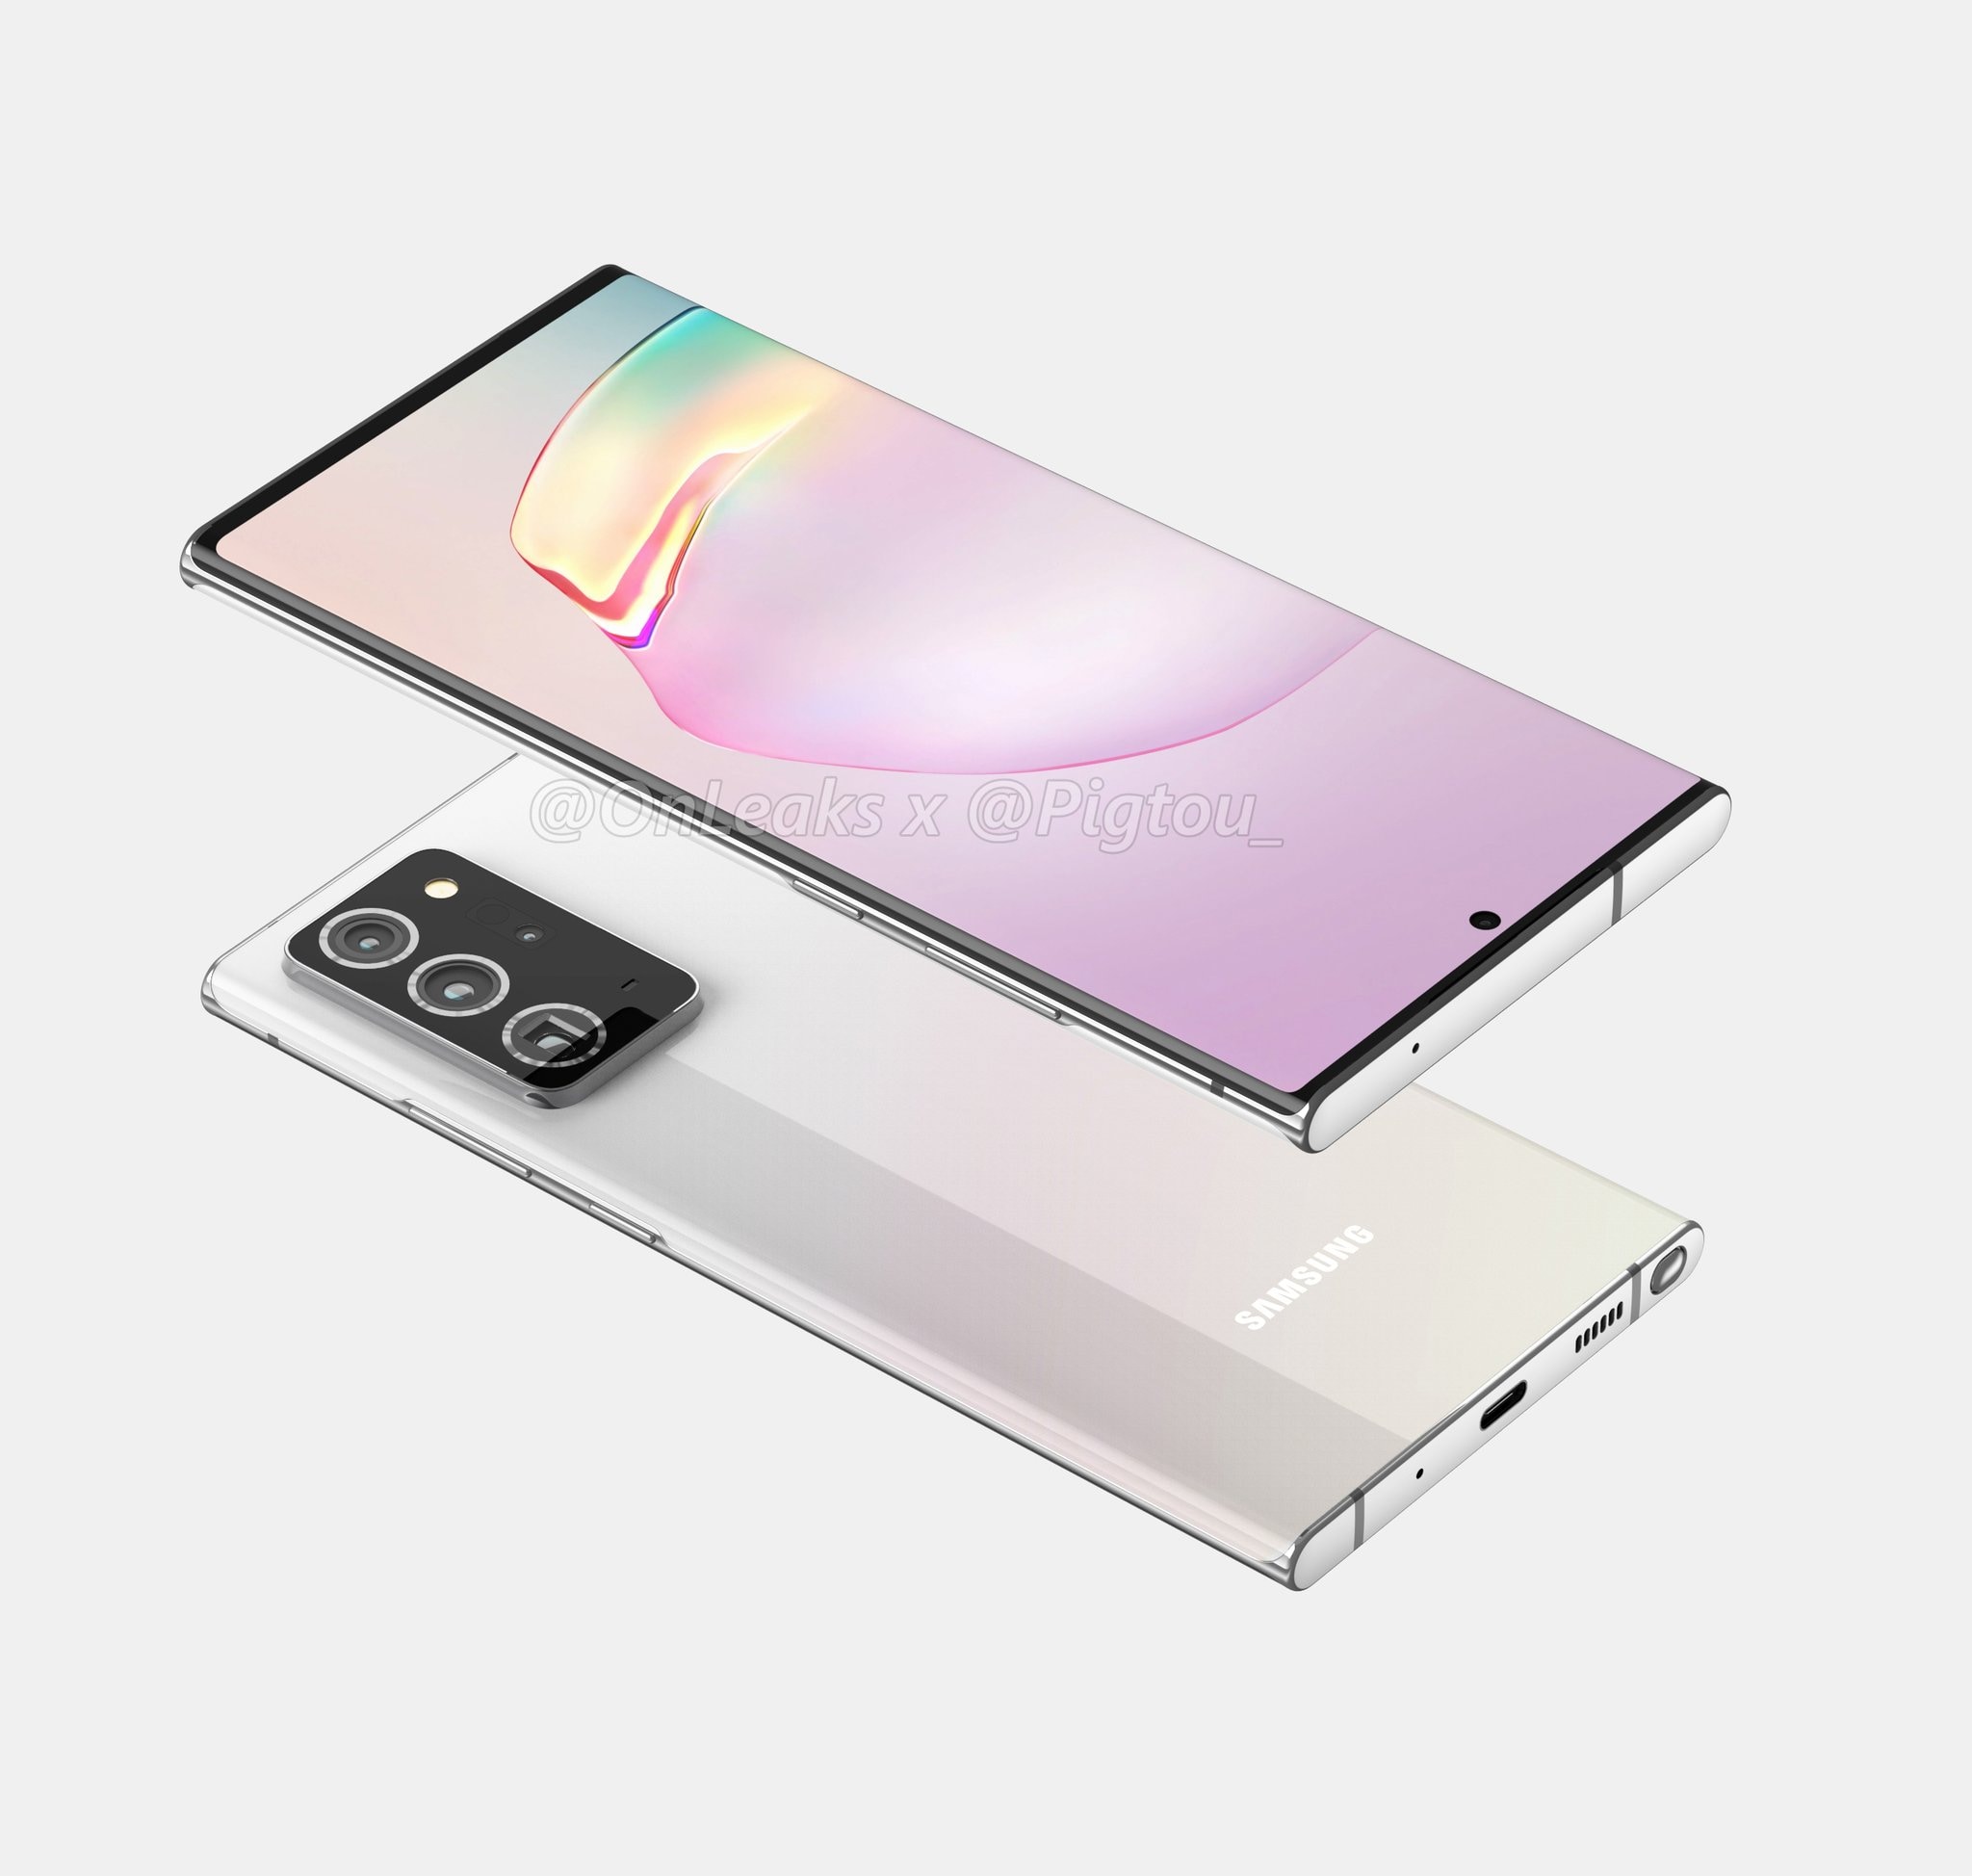 Ancora conferme su Galaxy Note 20 Ultra: sarà lui il top della gamma, con display LTPO Quad HD+ a 120 Hz